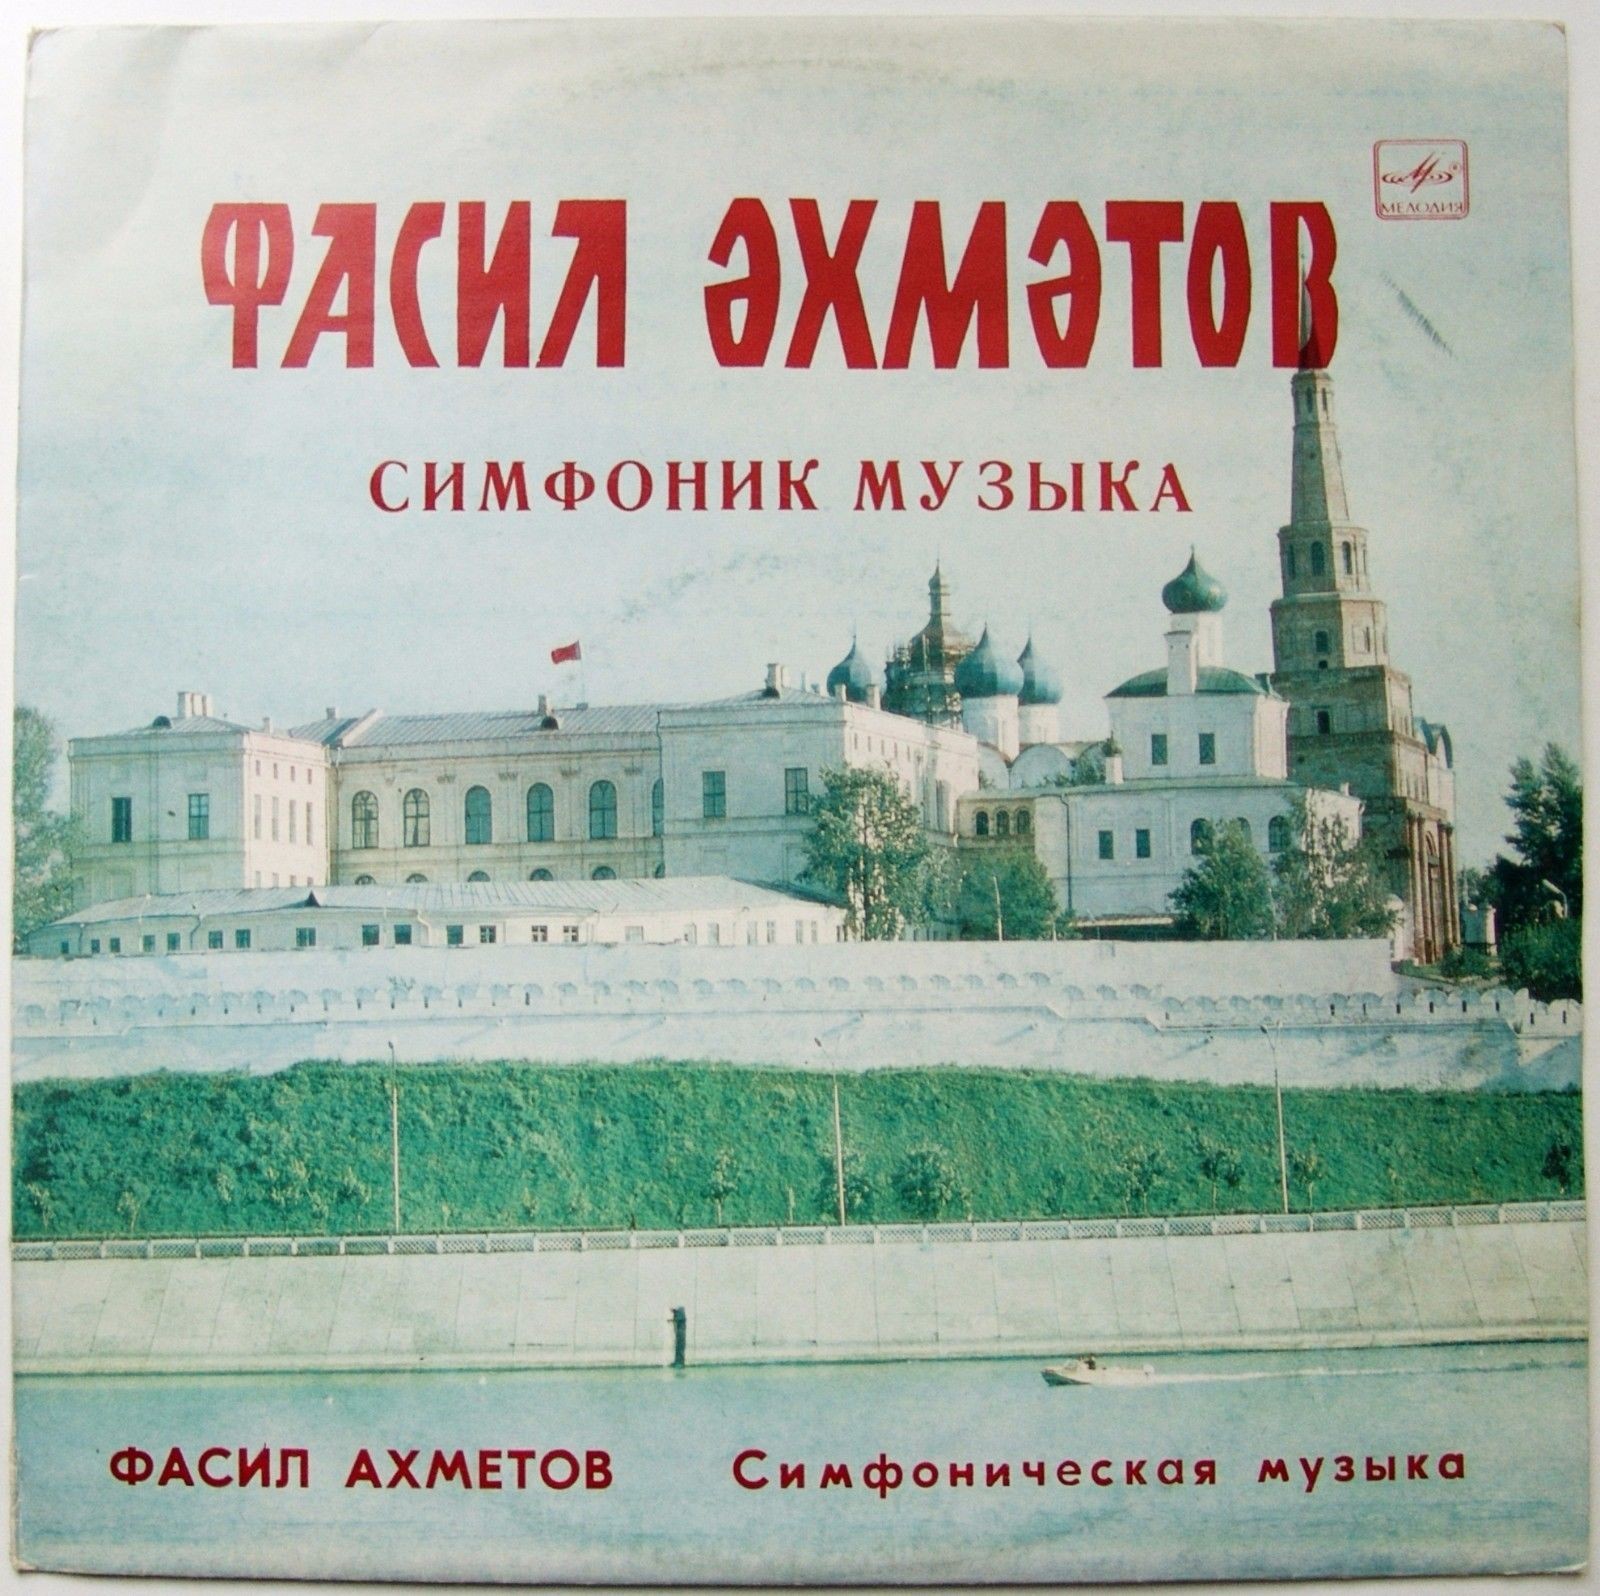 Ф. АХМЕТОВ (1935): Симфоническая музыка